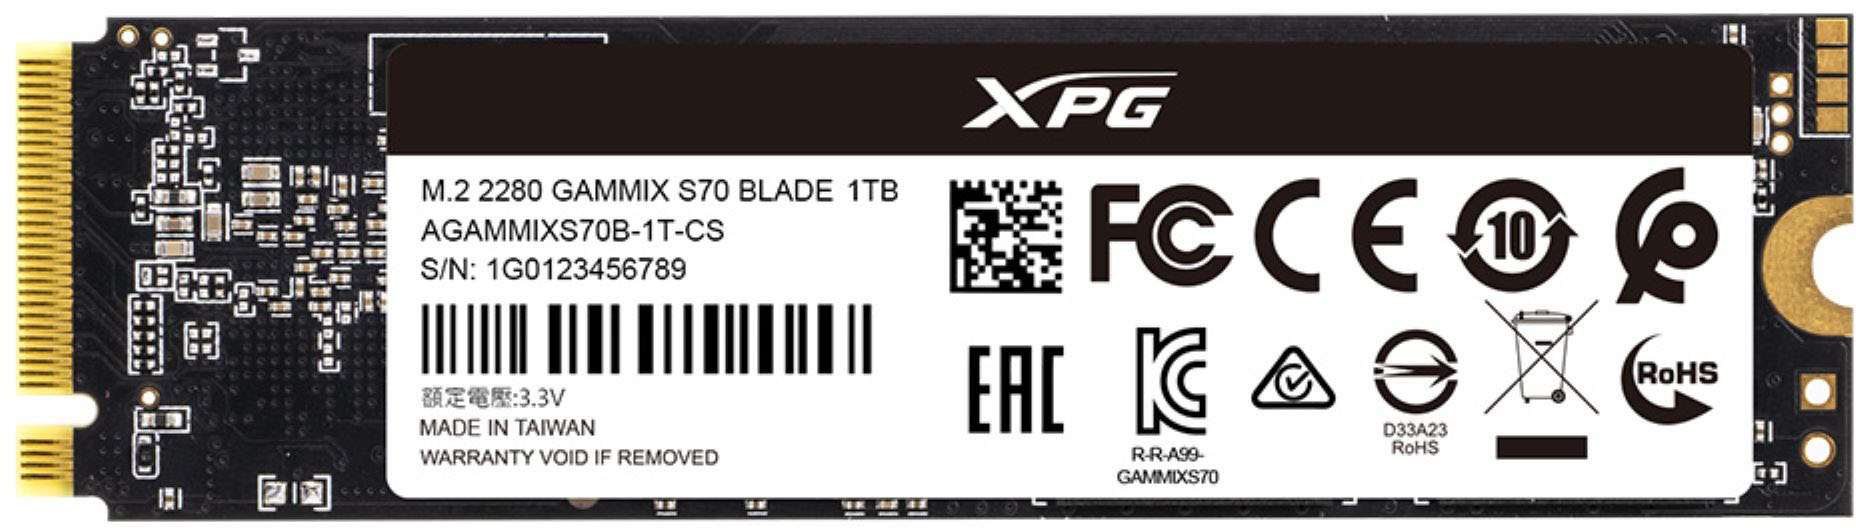 ADATA XPG GAMMIX S70 Blade 1TB Internal SSD PCIe Gen 4 x4 with 